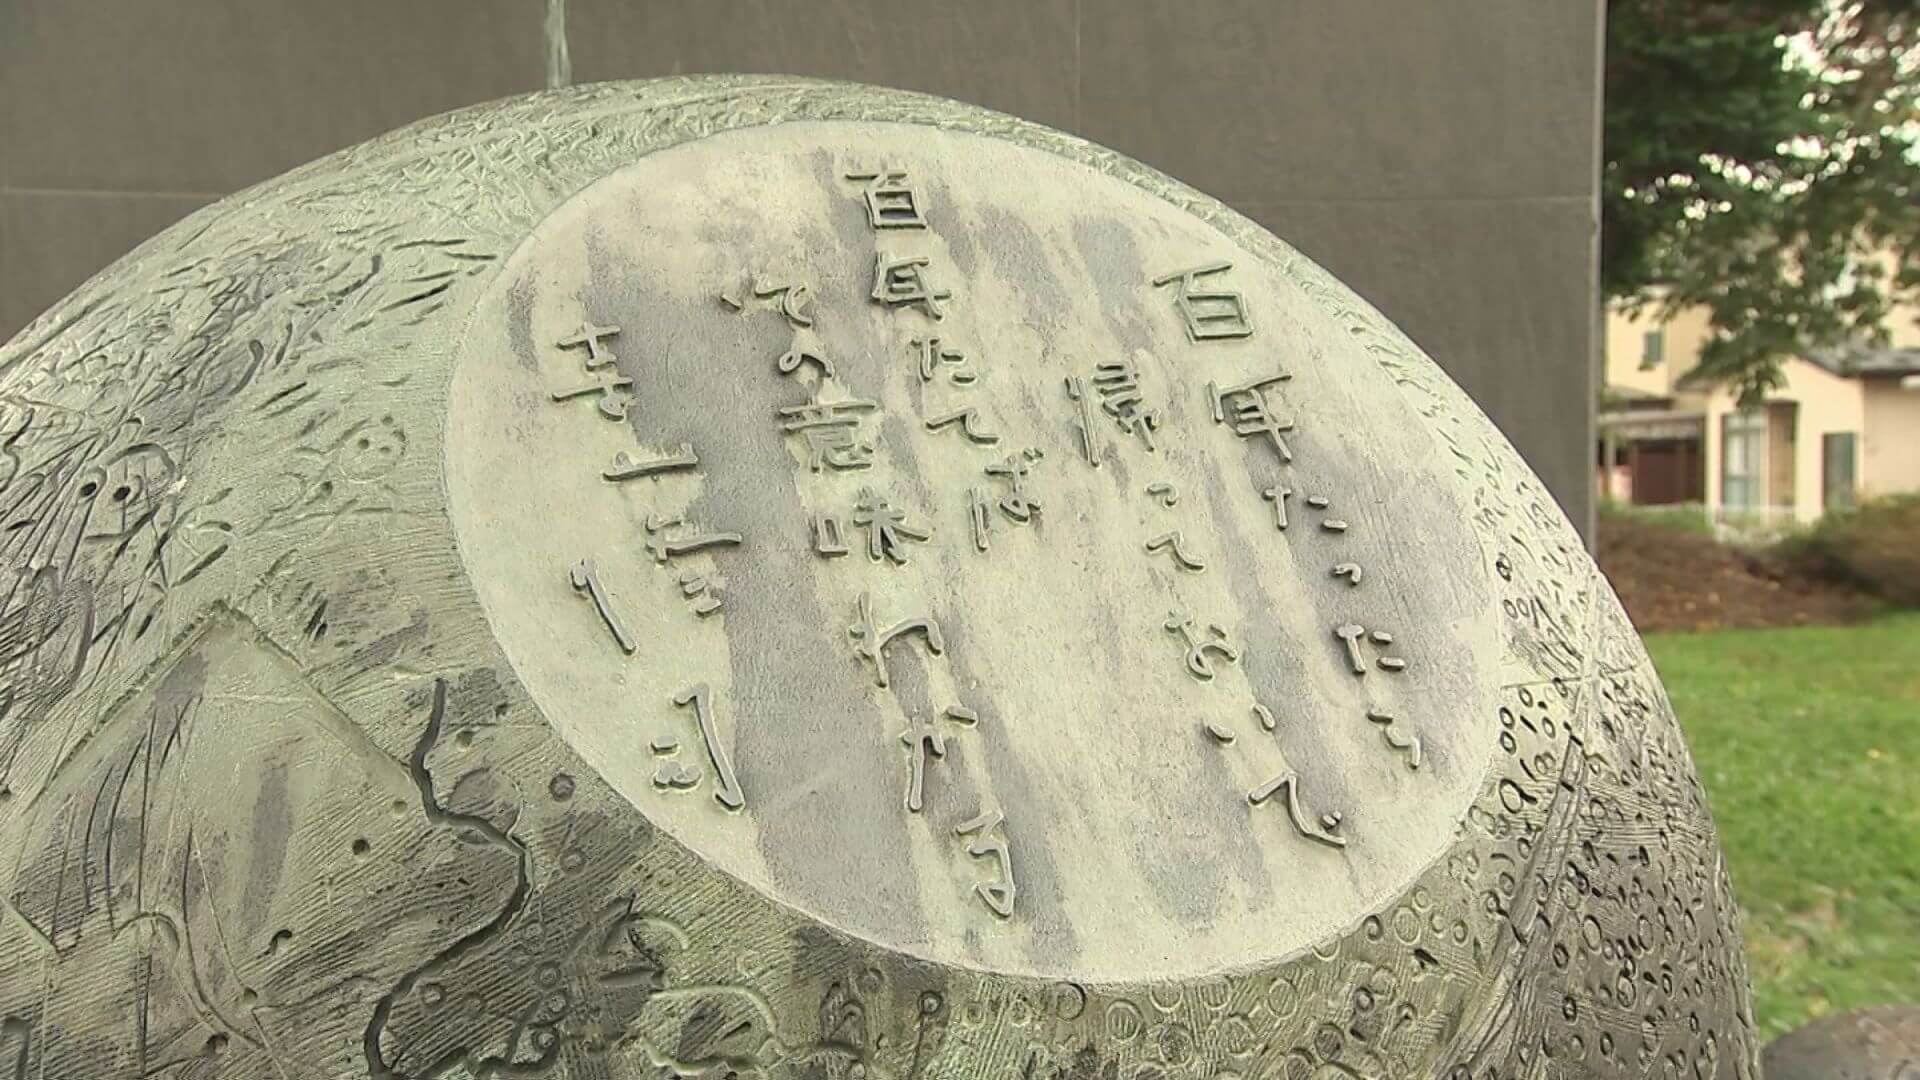 寺山修司の遺作 映画「さらば箱舟」のセリフ［百年たったら帰っておいで　百年たてば その意味わかる］と自筆で刻まれている